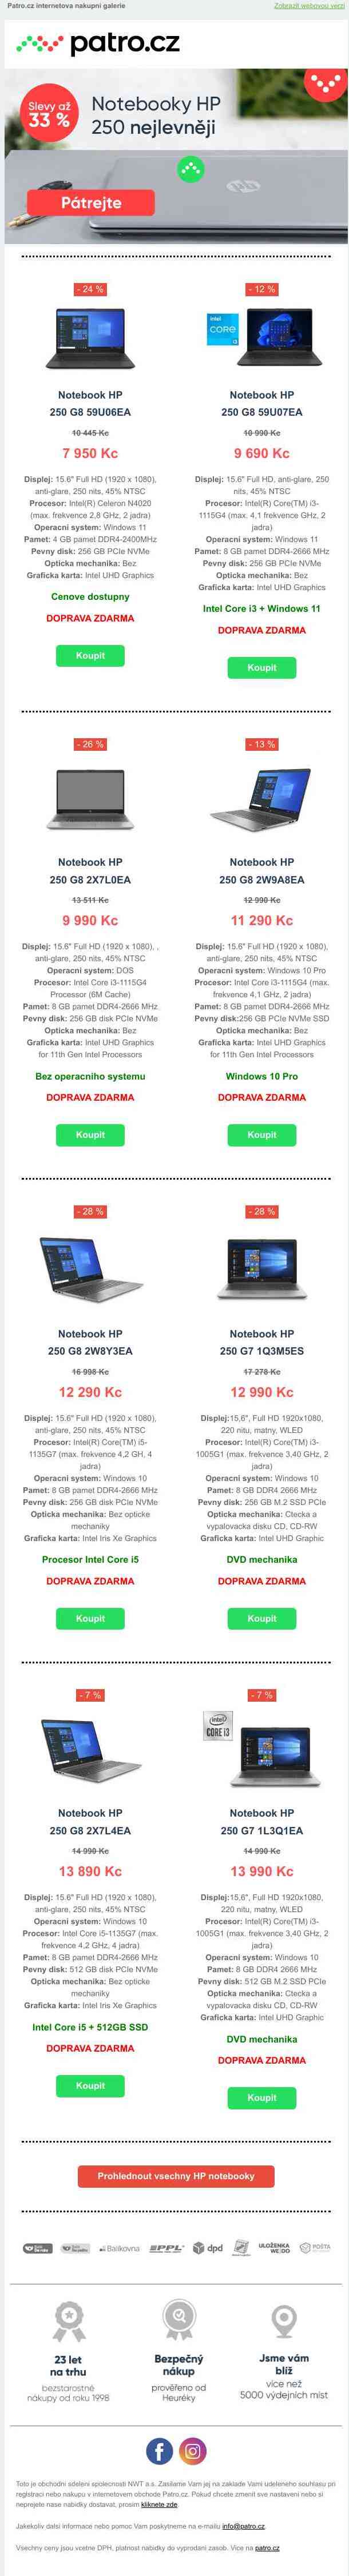 💻 Notebooky HP 250 nejlevněji 🤩 >> Pátrejte po až - 33 % slevách